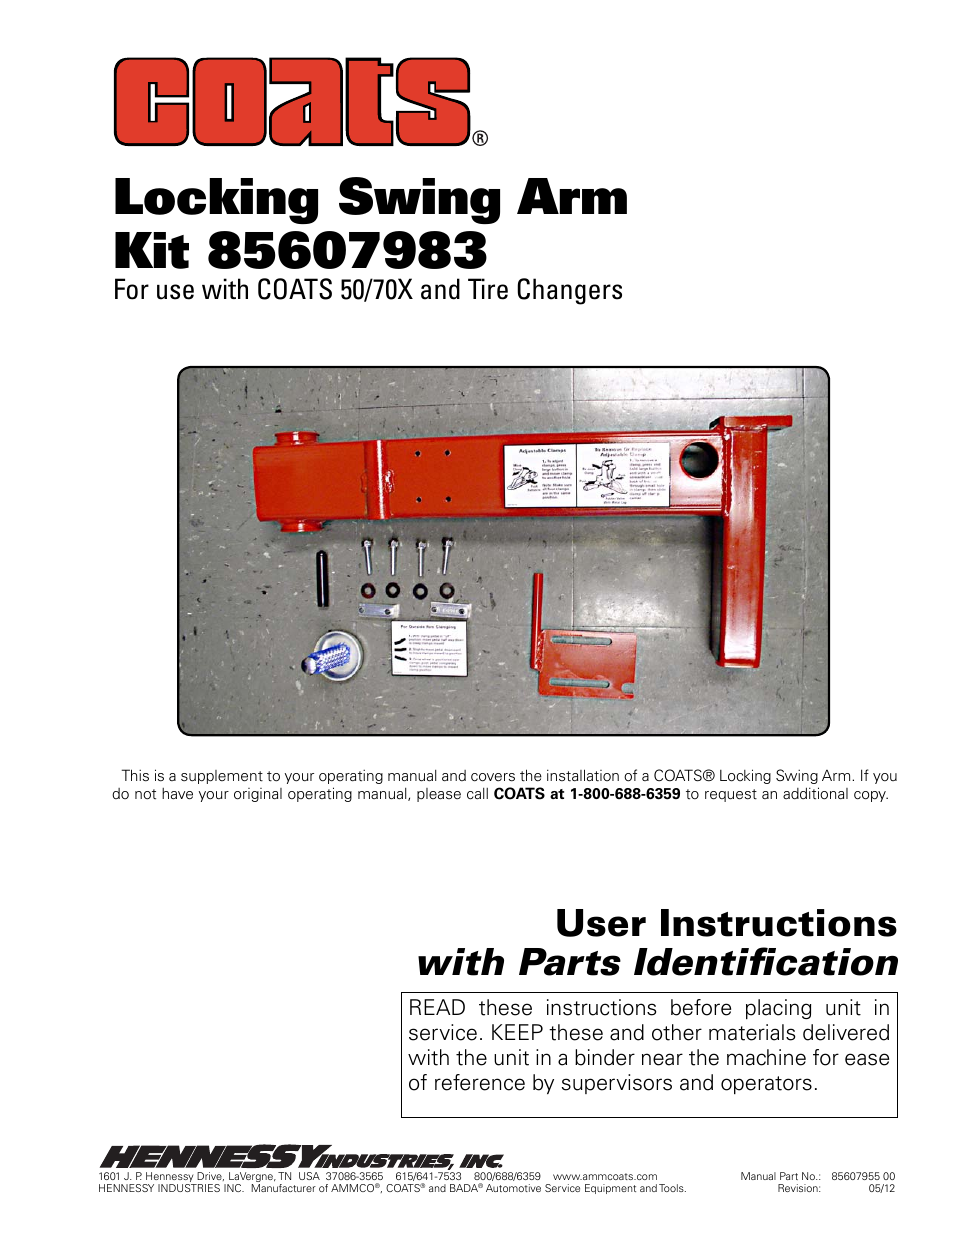 Kit 85607983 Locking Swing Arm